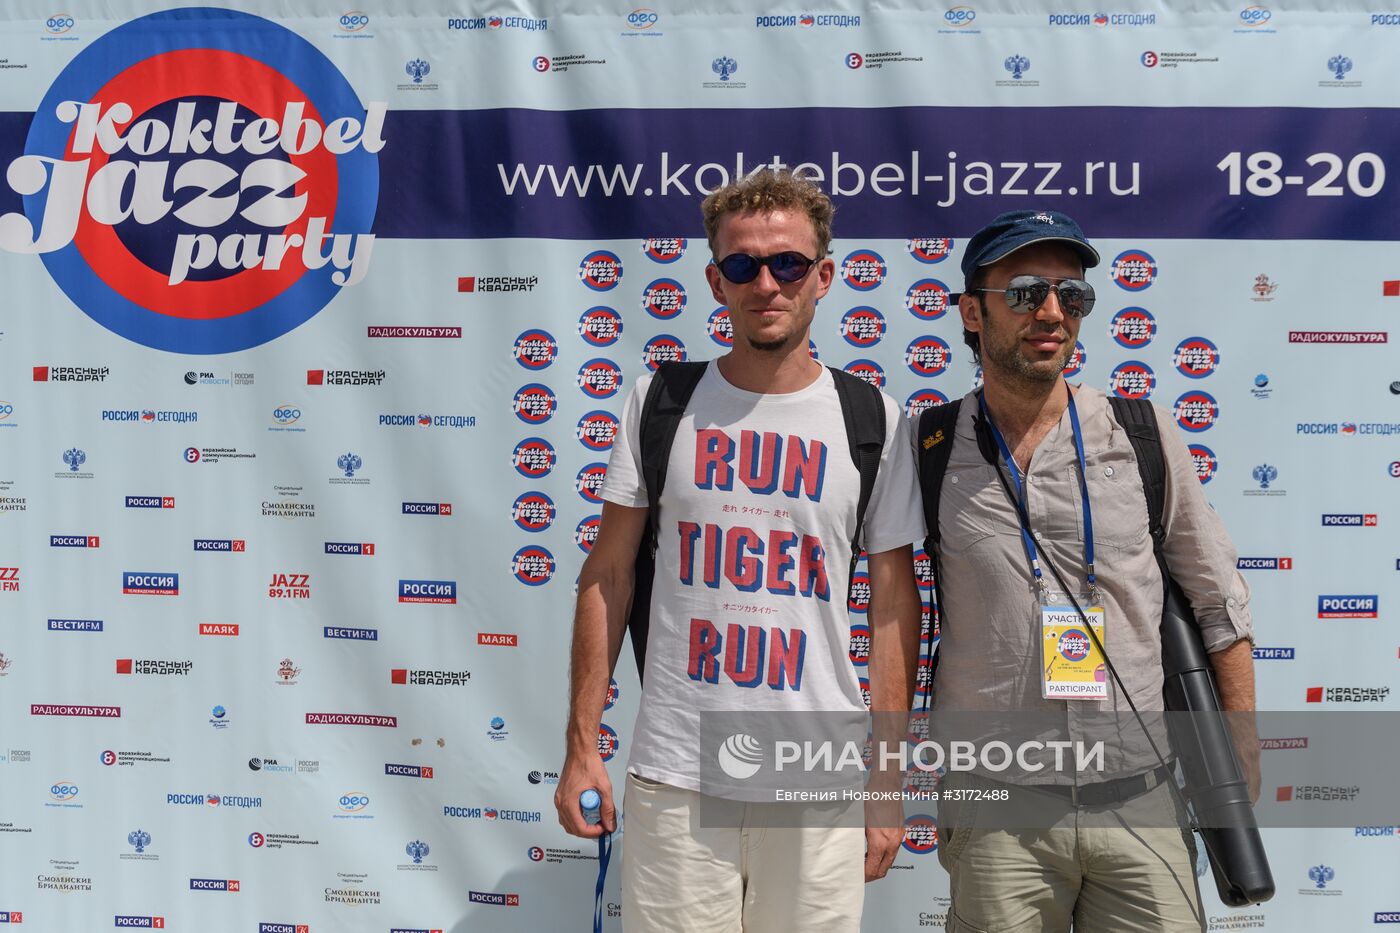 15-й международный музыкальный фестиваль Koktebel Jazz Party